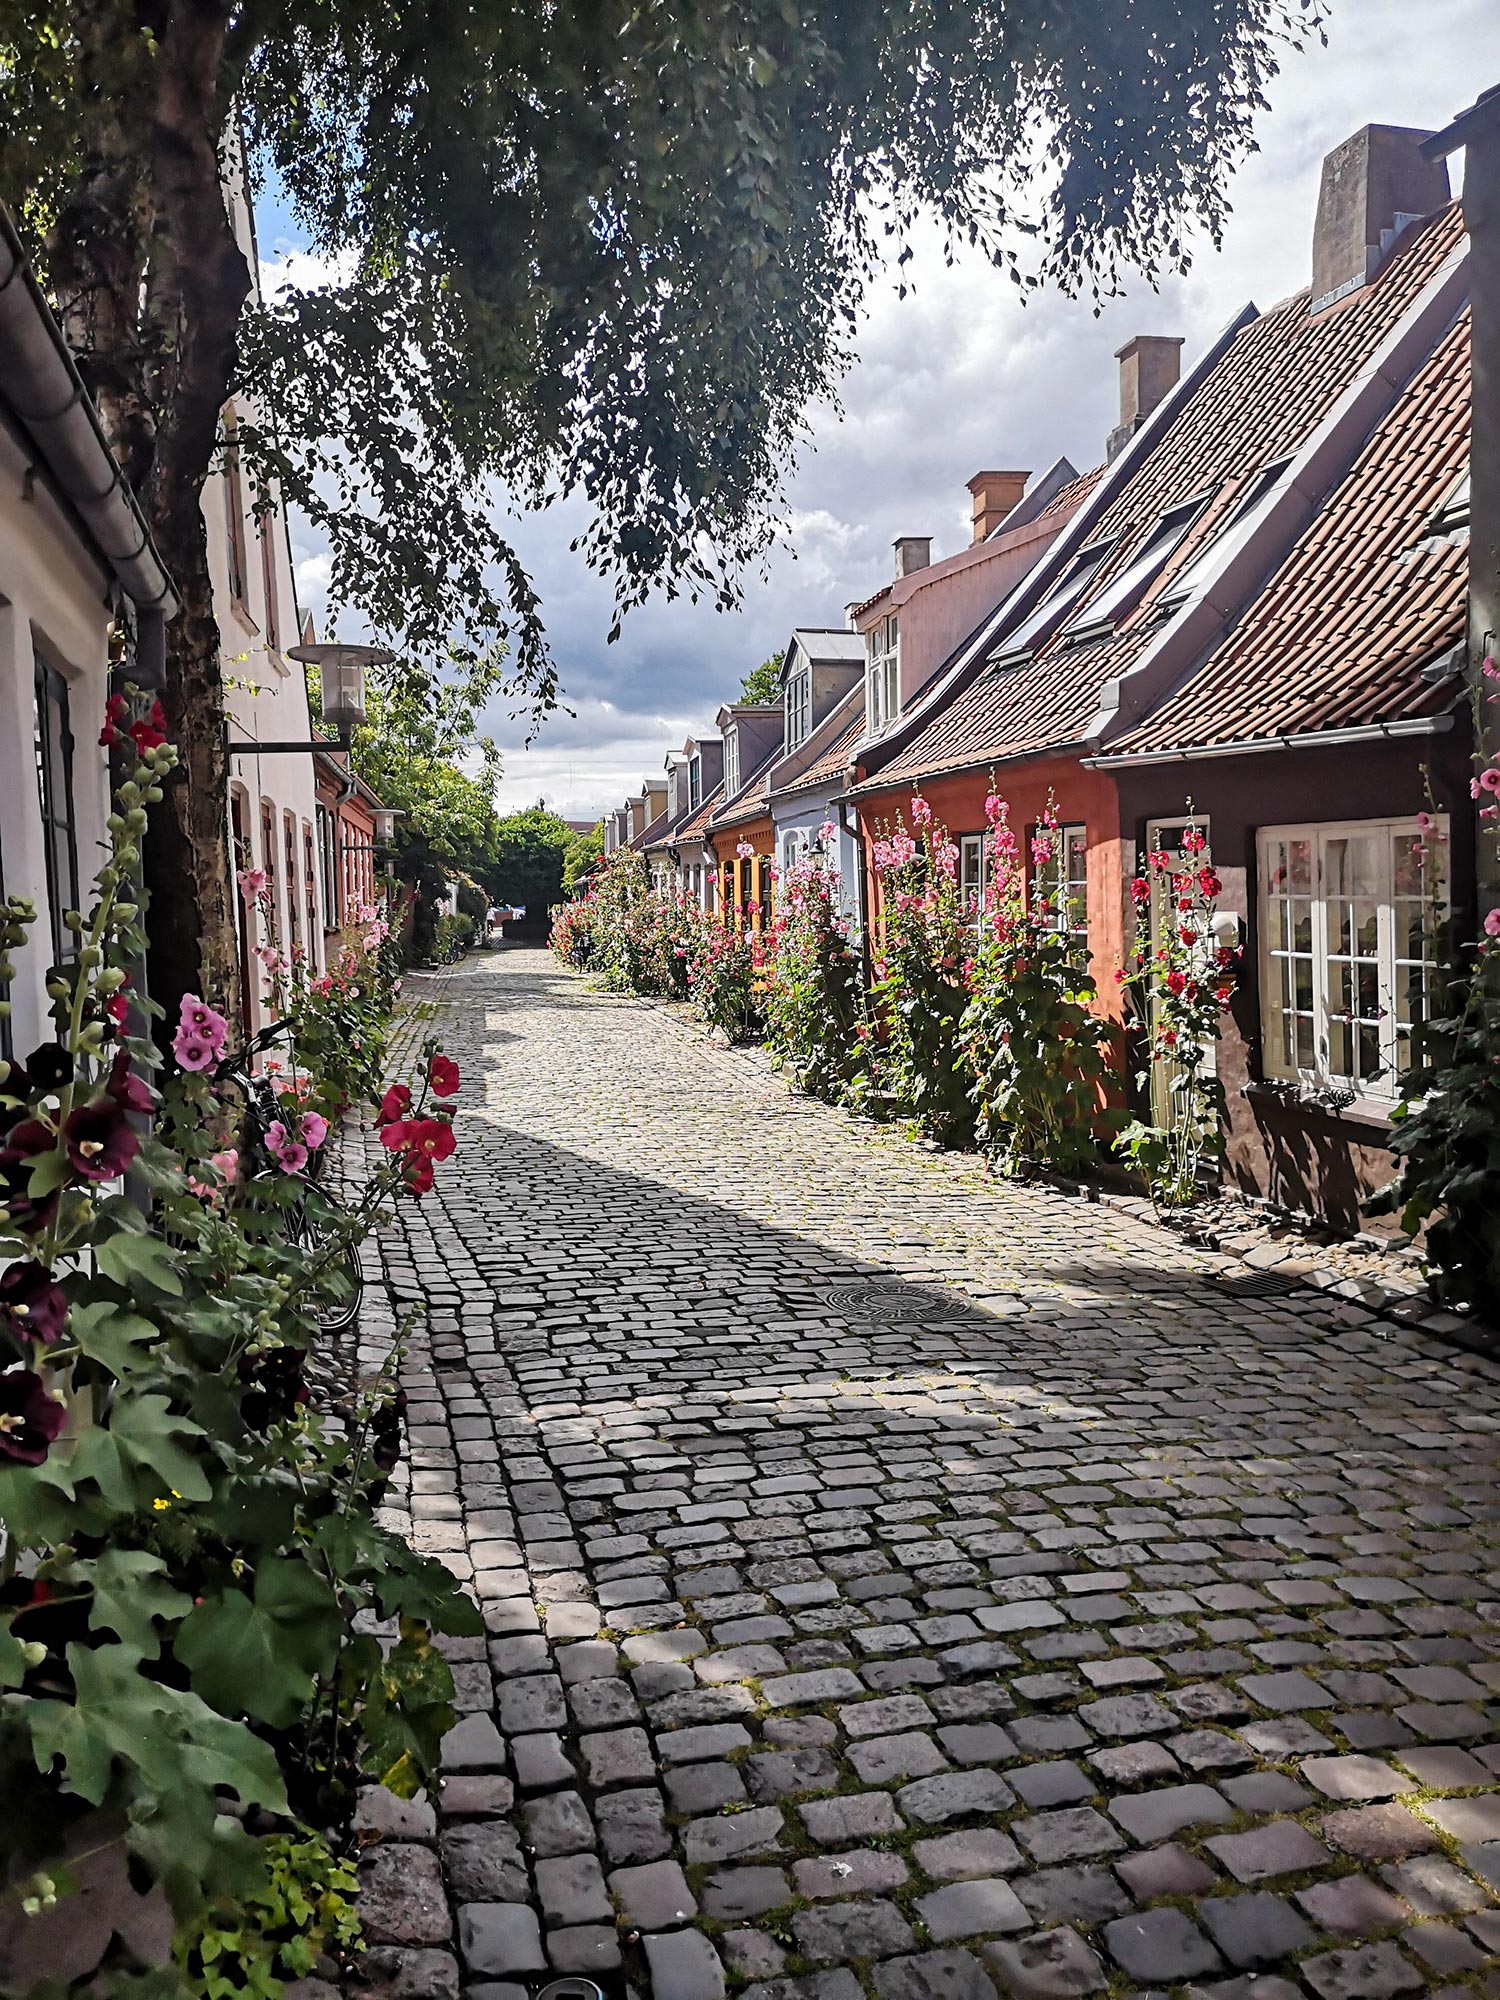 Habitations danoises sous des éclaircis du soleil. Les maisons sont de différentes couleurs et liées par une voie pavée entourée de fleur au Danemark